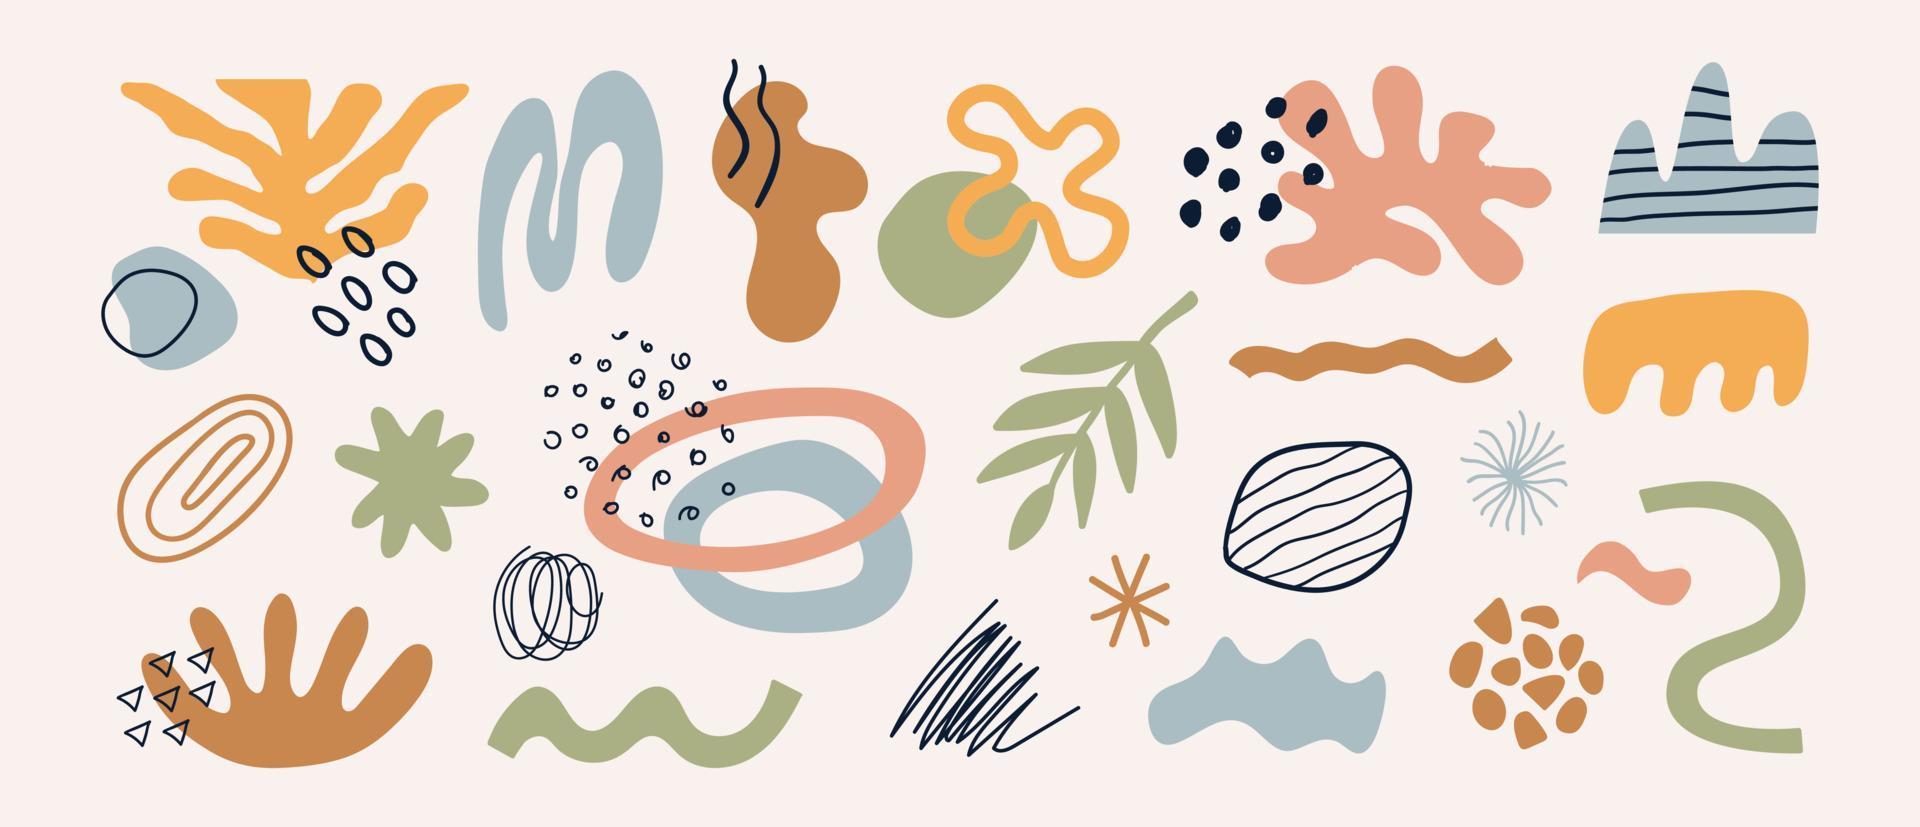 moderne set van verschillende handgetekende verschillende vormen, planten, tropische elementen en doodle-objecten. abstract eigentijds trendy vectorontwerp. natuurlijke organische illustratie vector